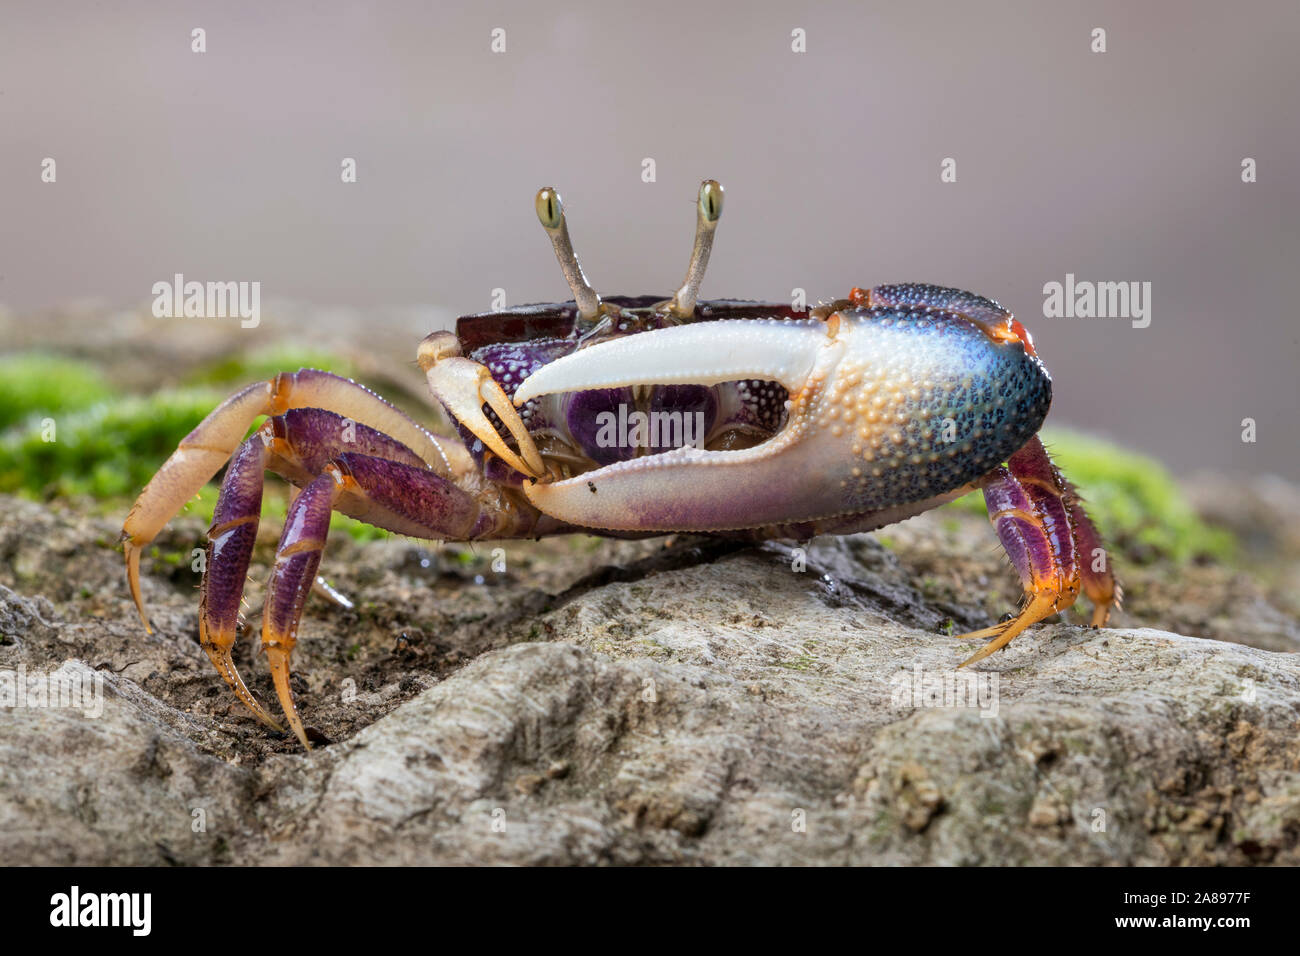 Afruca tangeri,Winkerkrabbe,fiddler crab Foto Stock